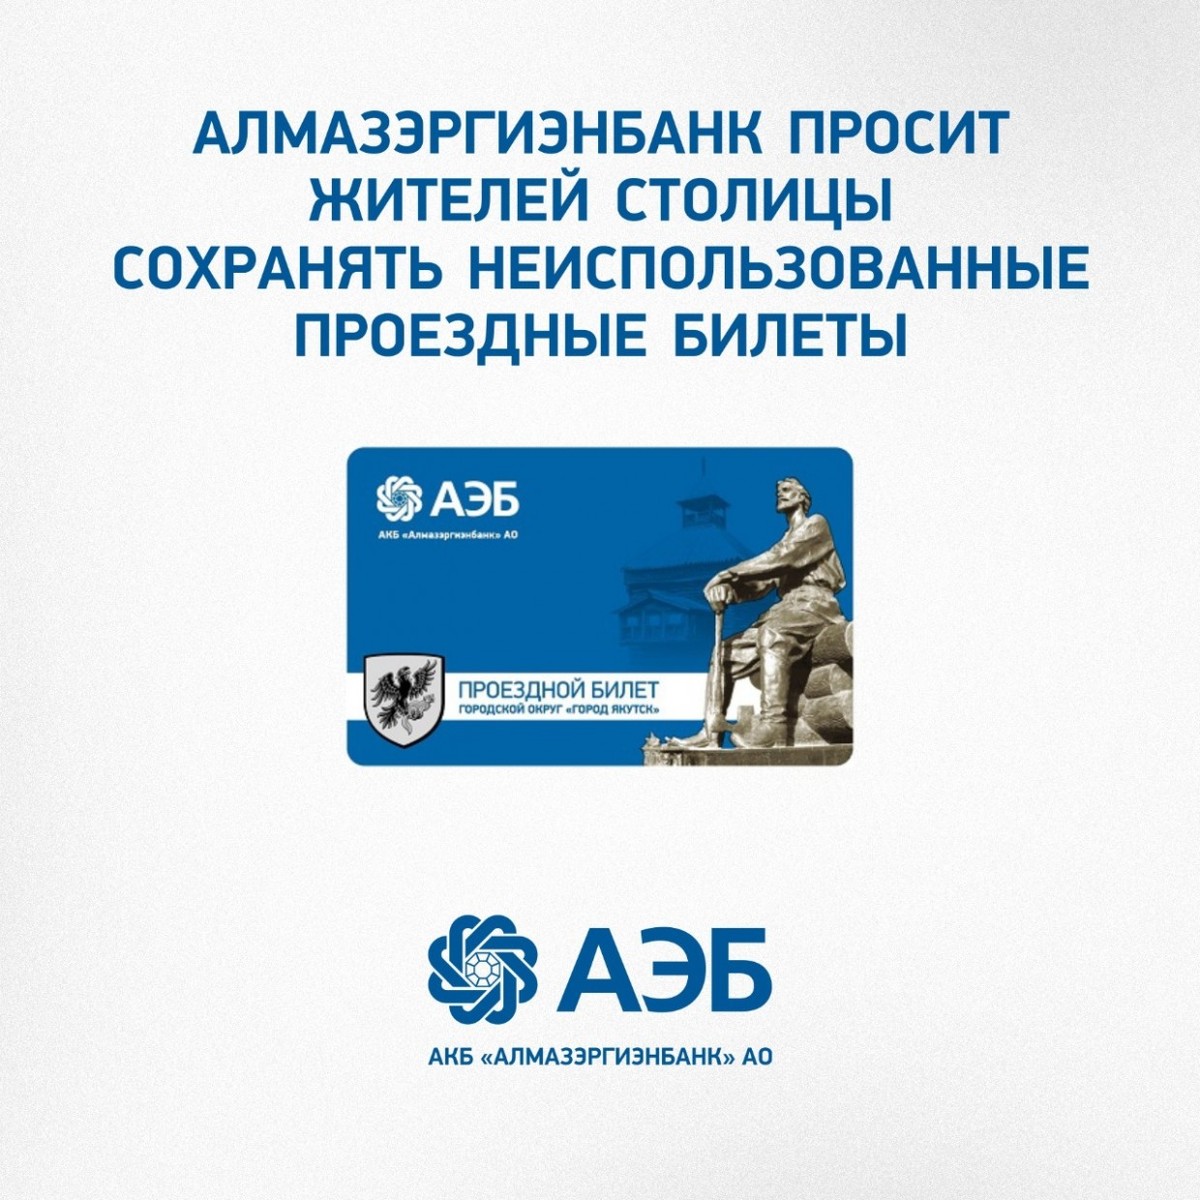 Алмазэргиэнбанк просит жителей столицы сохранять неиспользованные проездные билеты